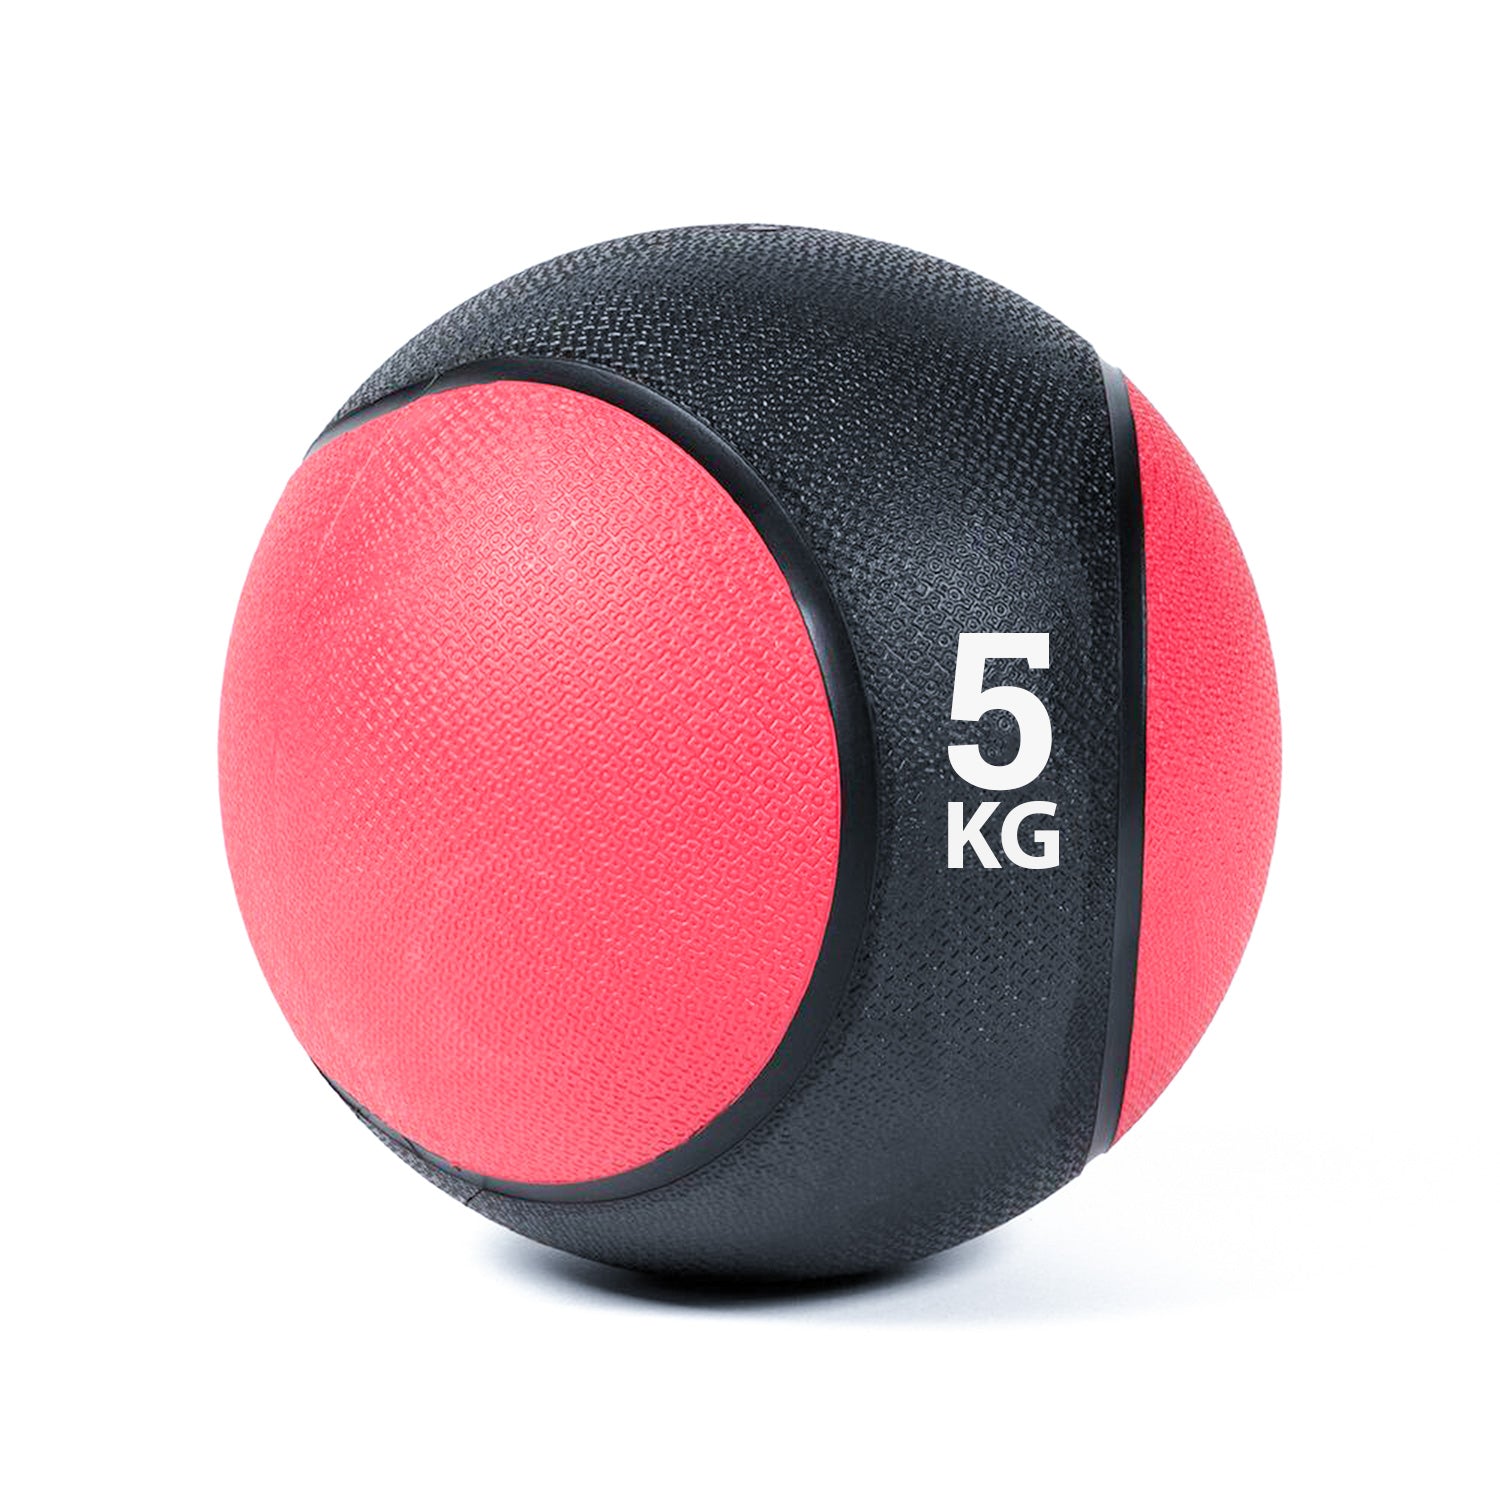 كرة طبية من المطاط لاعادة التأهيل و اللياقة البدنية - لون اسود و احمر - وزن 5 كيلو جرام - Kanteen - كانتين